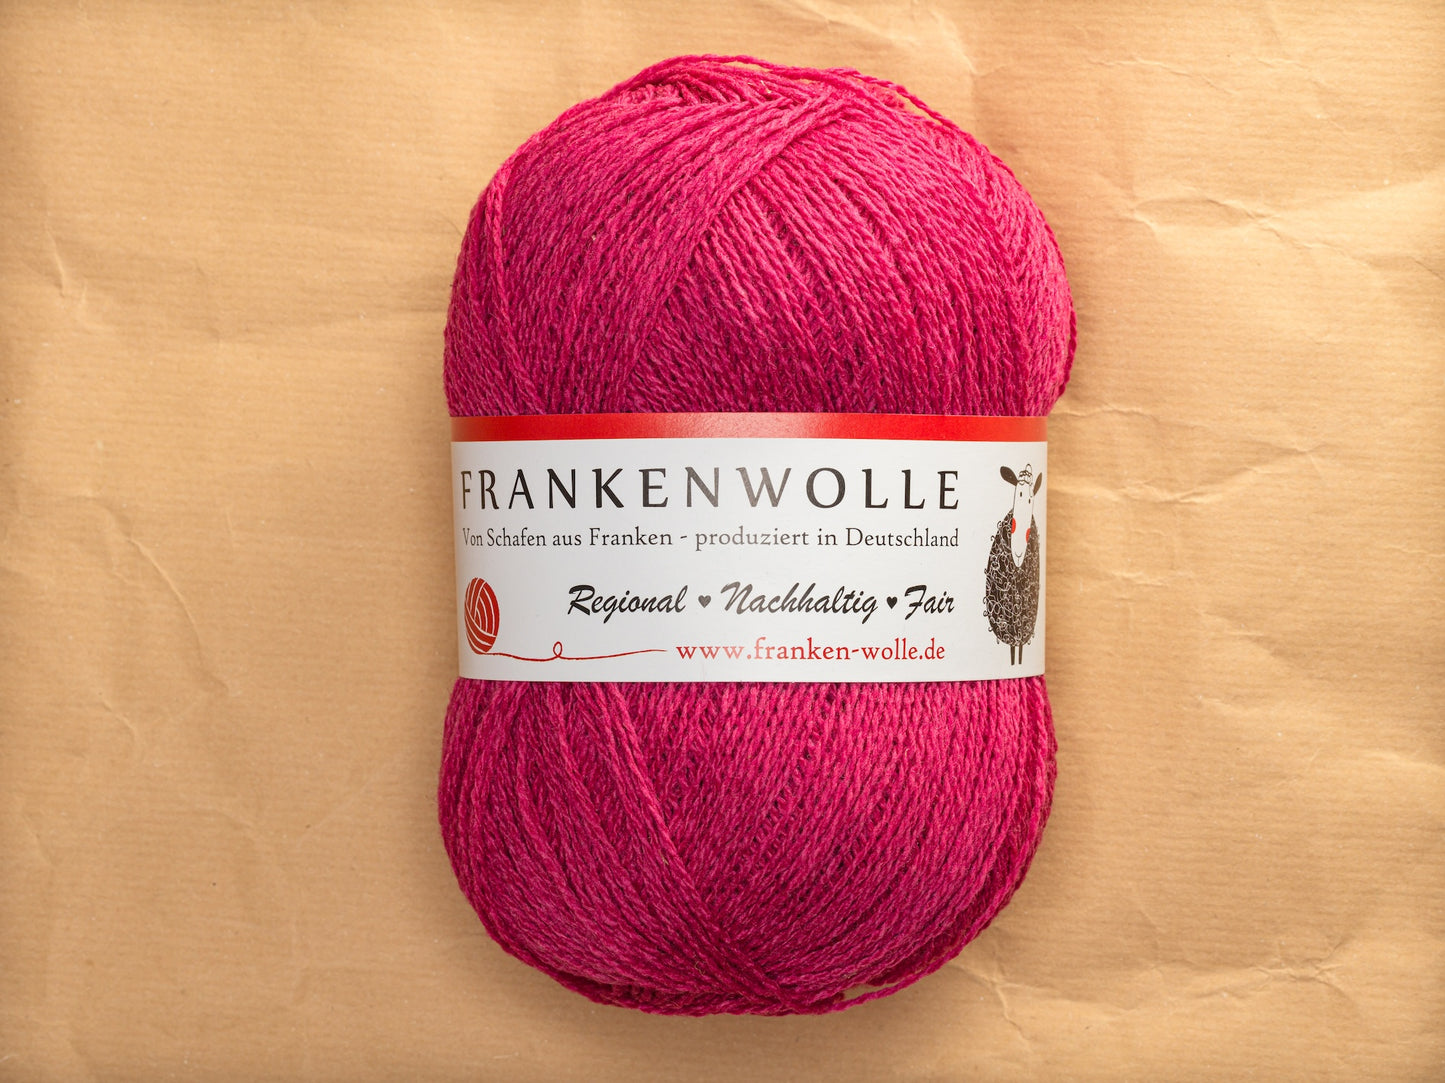 Frankenwolle Merino Garn Pink 400 gefärbt Knäuel